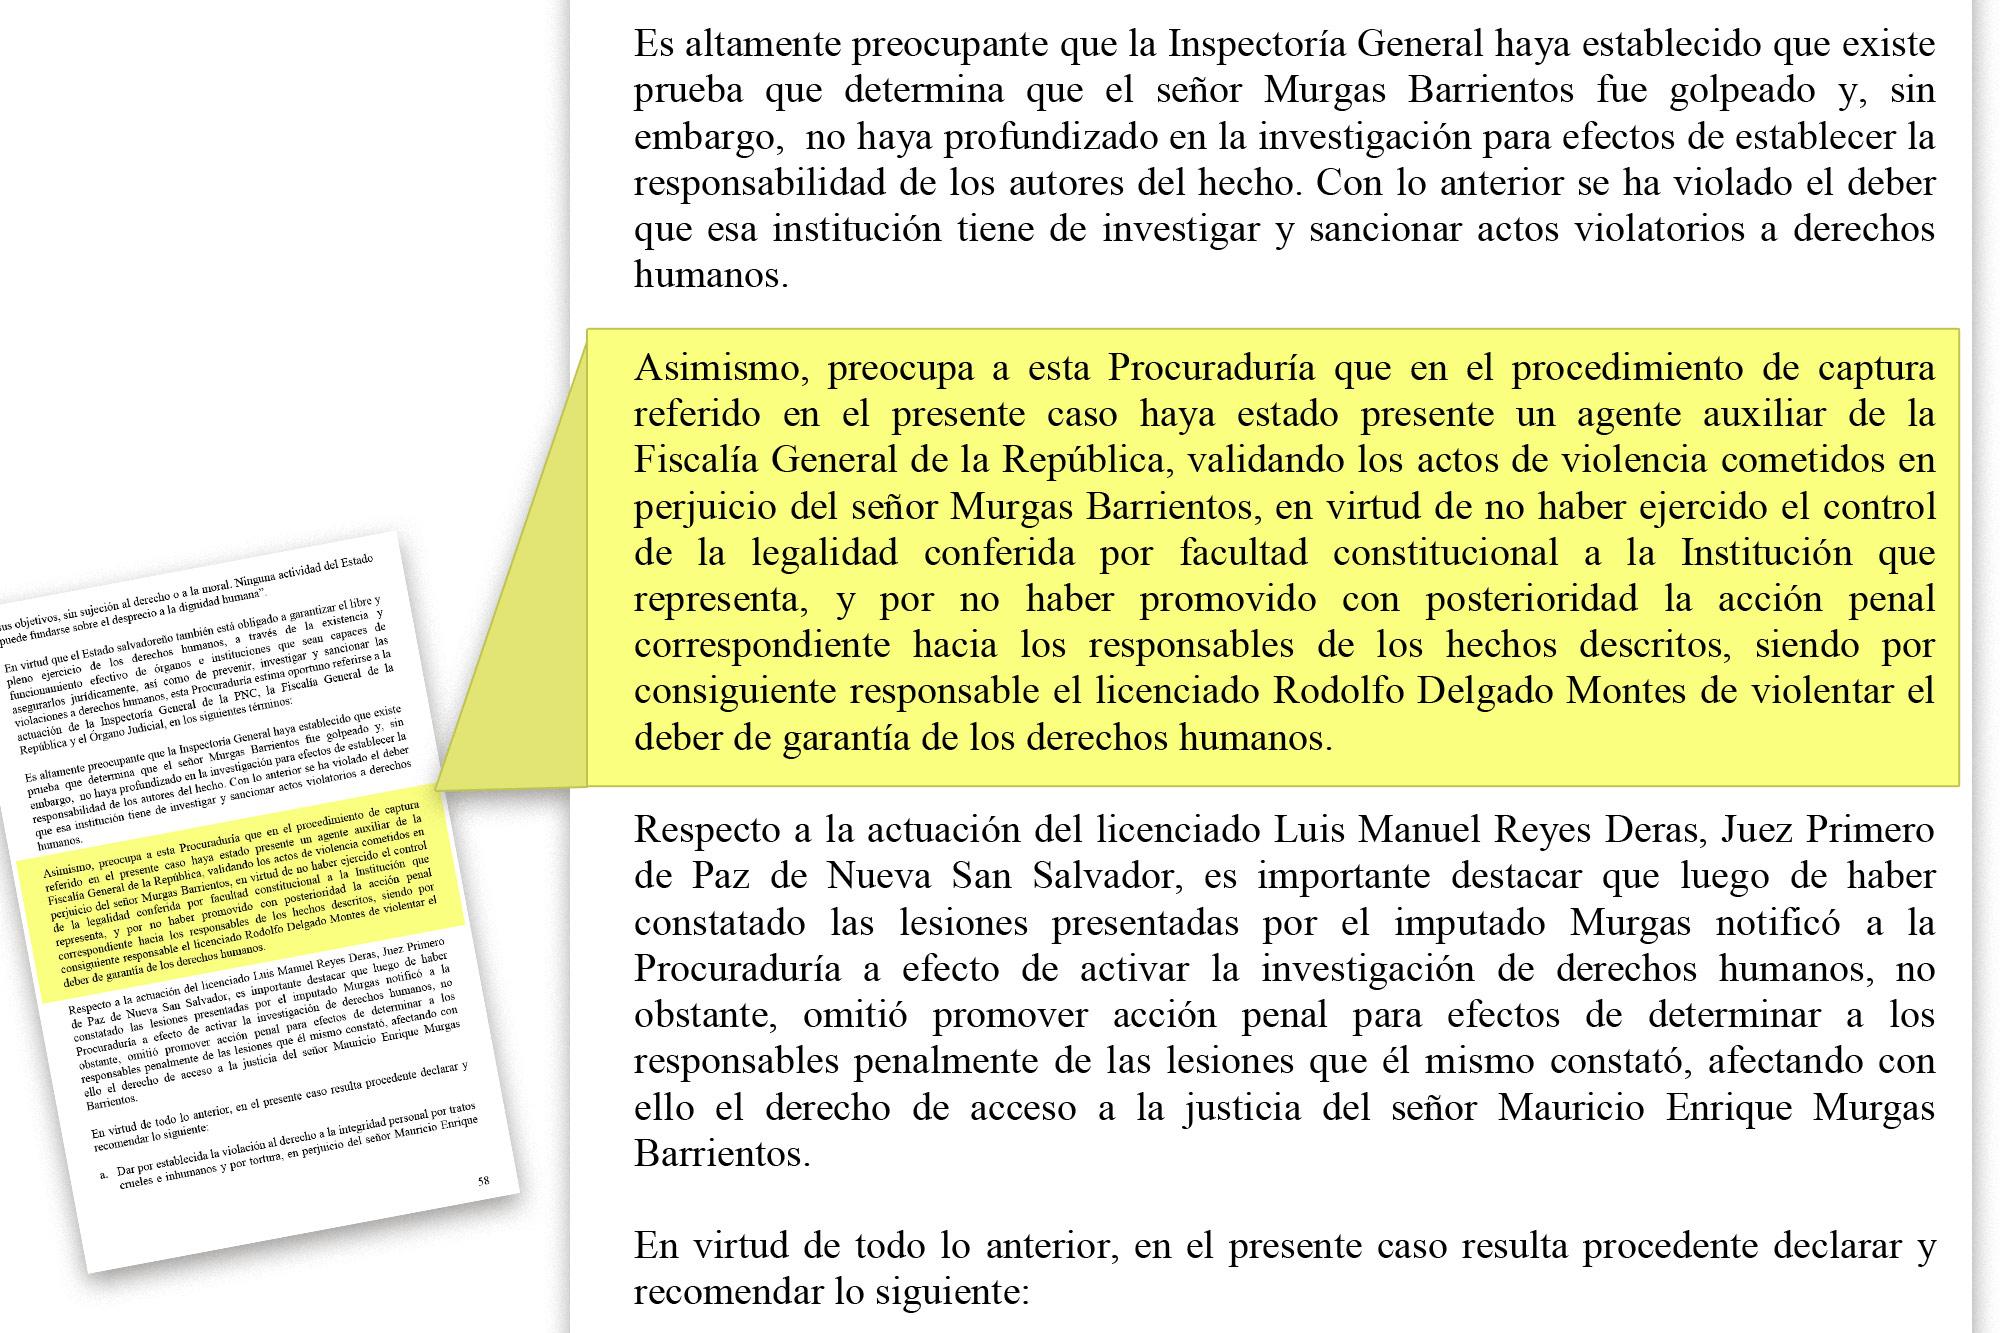 Extracto del informe “La Policía Nacional Civil y el respeto a los derechos humanos en El Salvador”, PDDH, diciembre de 2003.